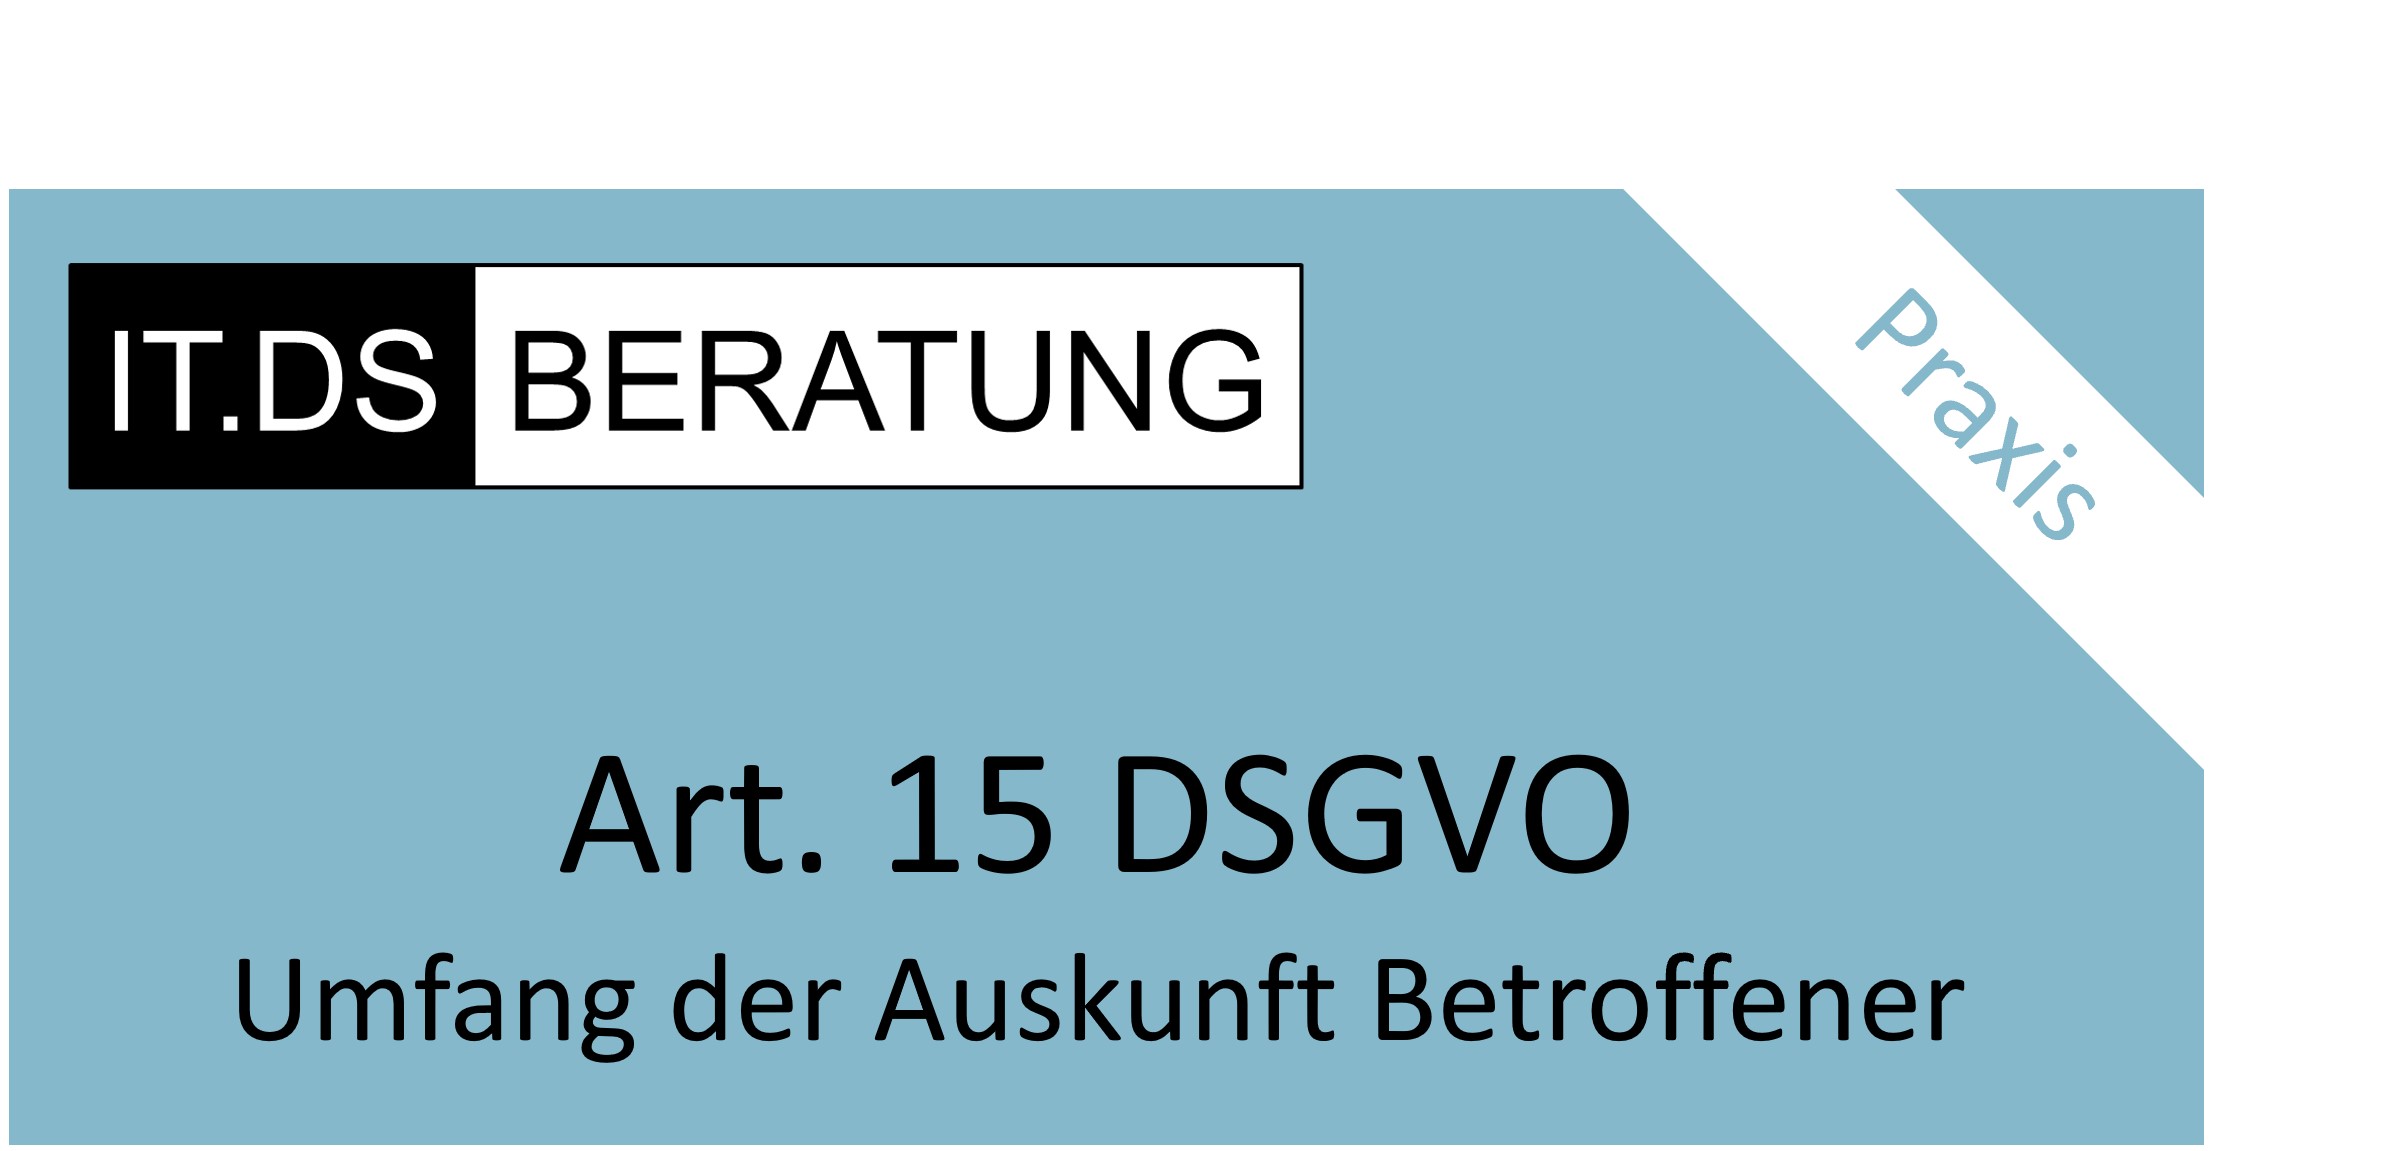 You are currently viewing Datenschutz und Auskunft  – Urteil des Bundesgerichtshofes